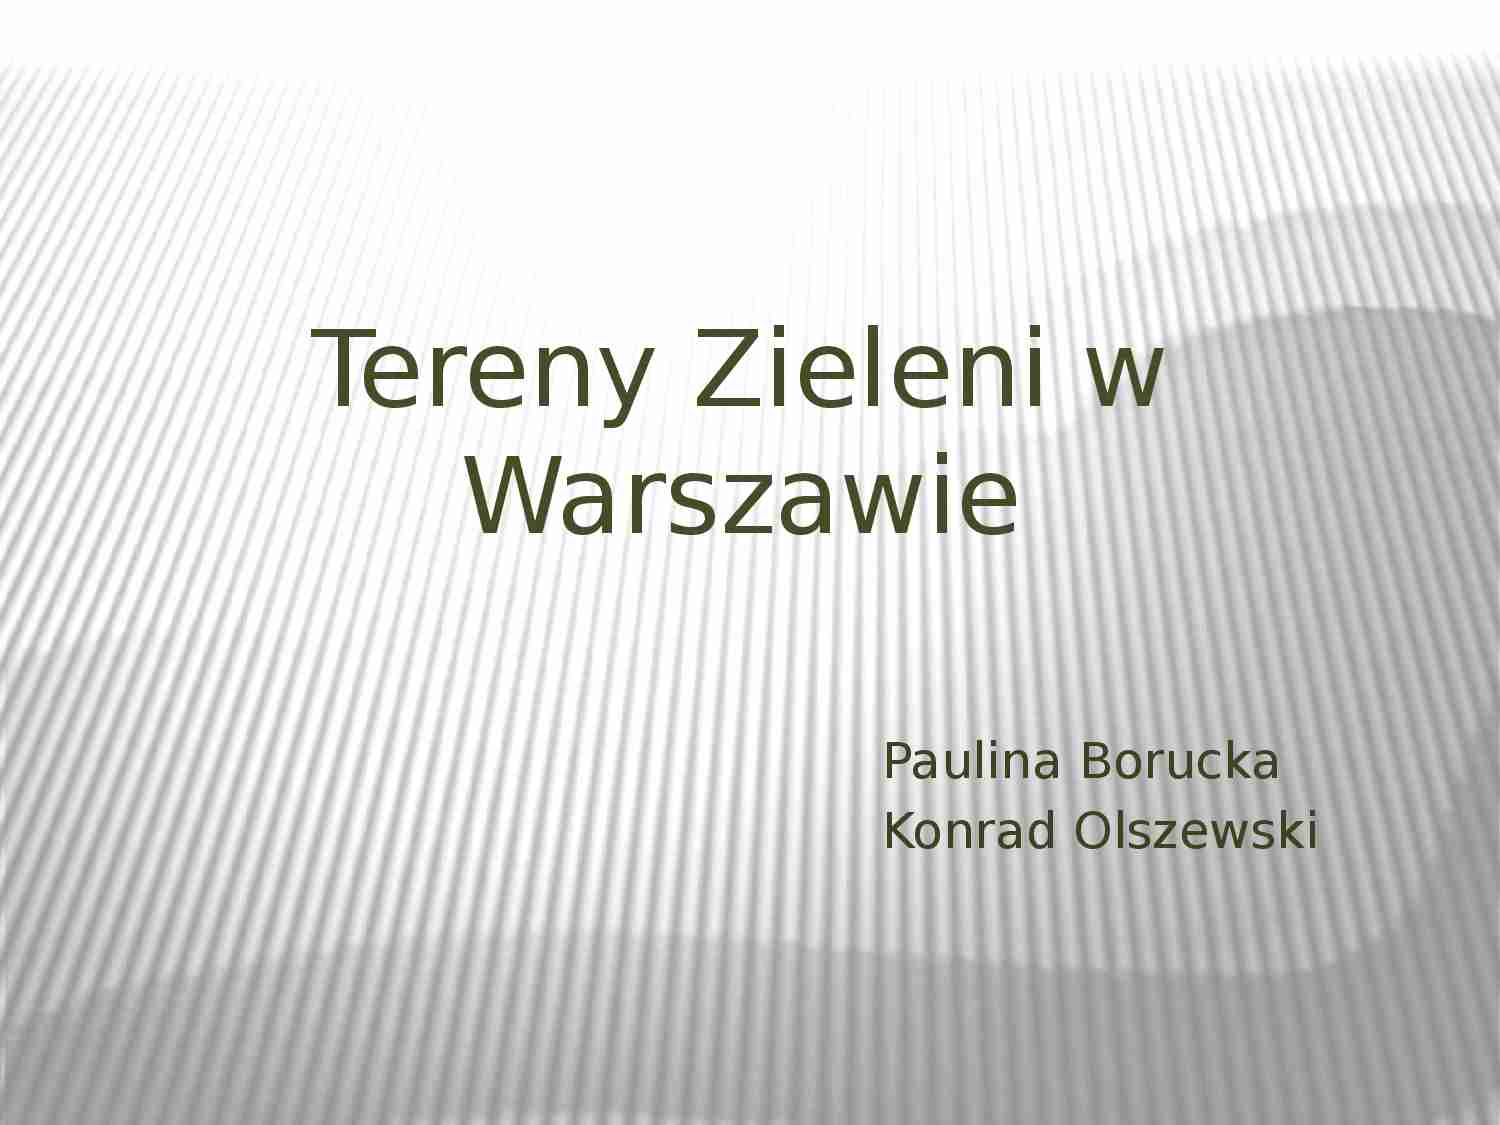 Tereny zielone w Warszawie - prezentacja  - strona 1